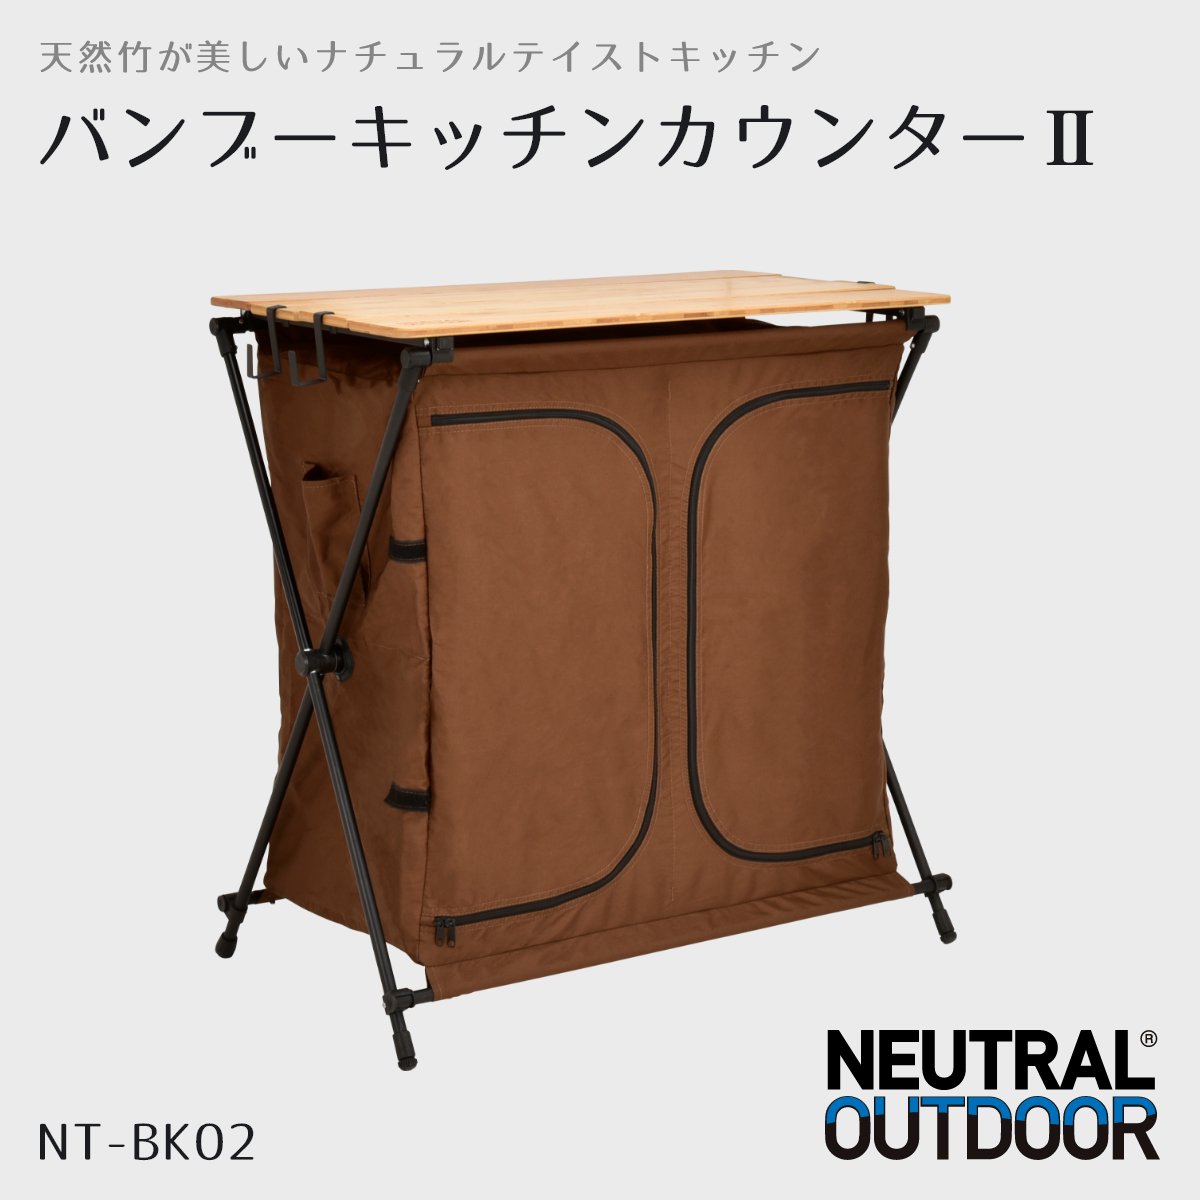 バンブーキッチンカウンターⅡ ブラウン NT-BK02 – Neutral Outdoor 